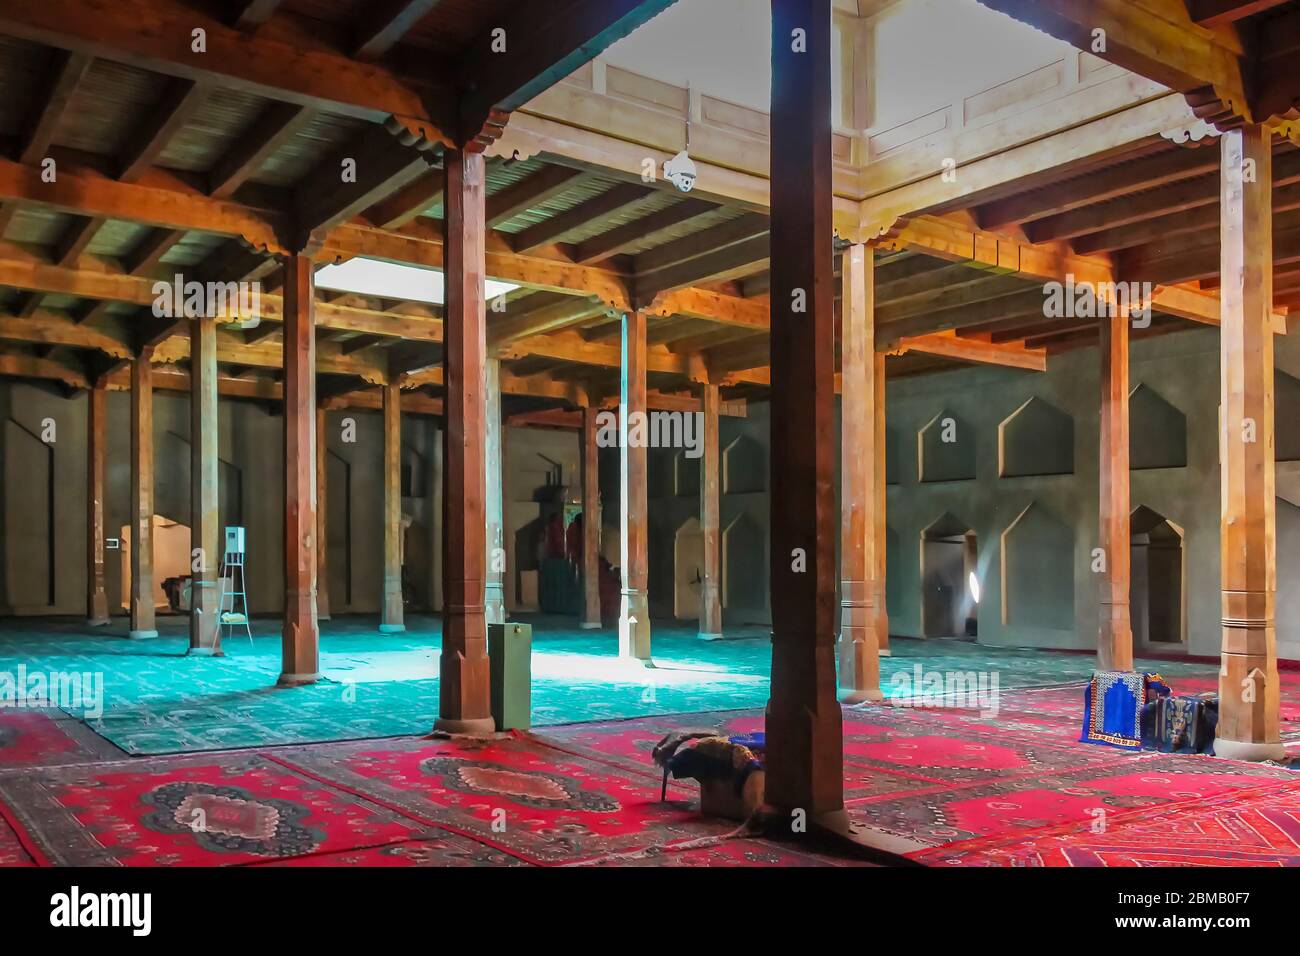 Turpan, Xinjiang, Cina - 10 luglio 2014: Le sale di preghiera interne della moschea adiacente al Minareto di Emin sostenuto da colonne di legno Foto Stock